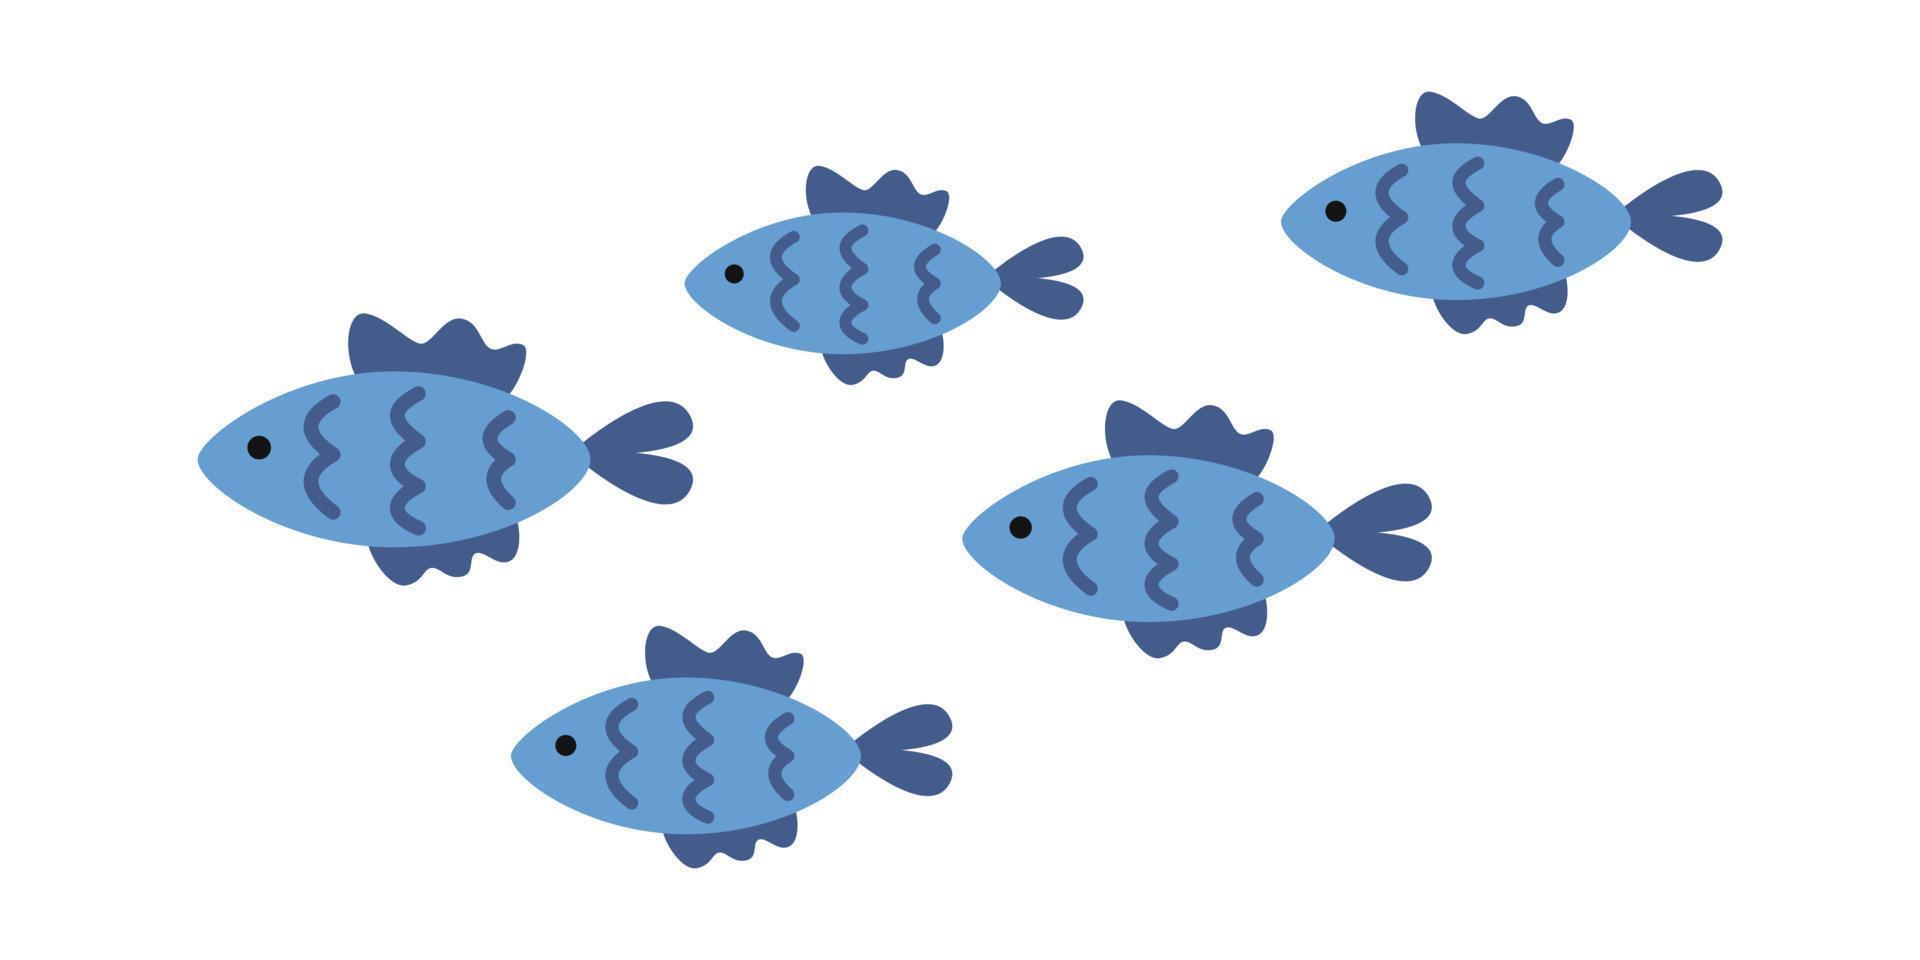 Vektor Fischschwarm. blaue fische im flachen design. Gruppen von Meeresfischen. Meereslebewesen.